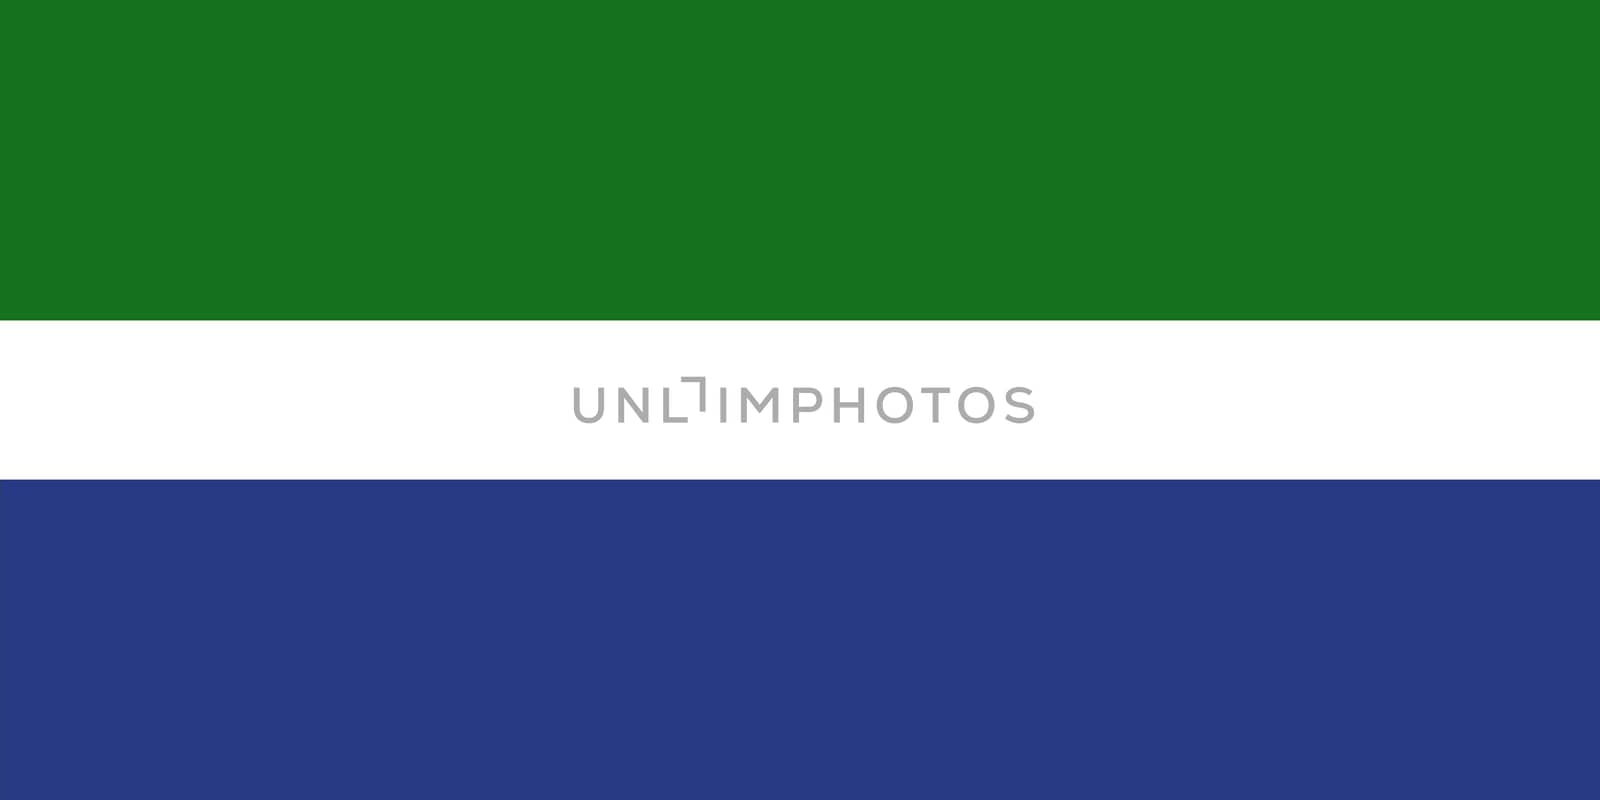 livonia flag by tony4urban